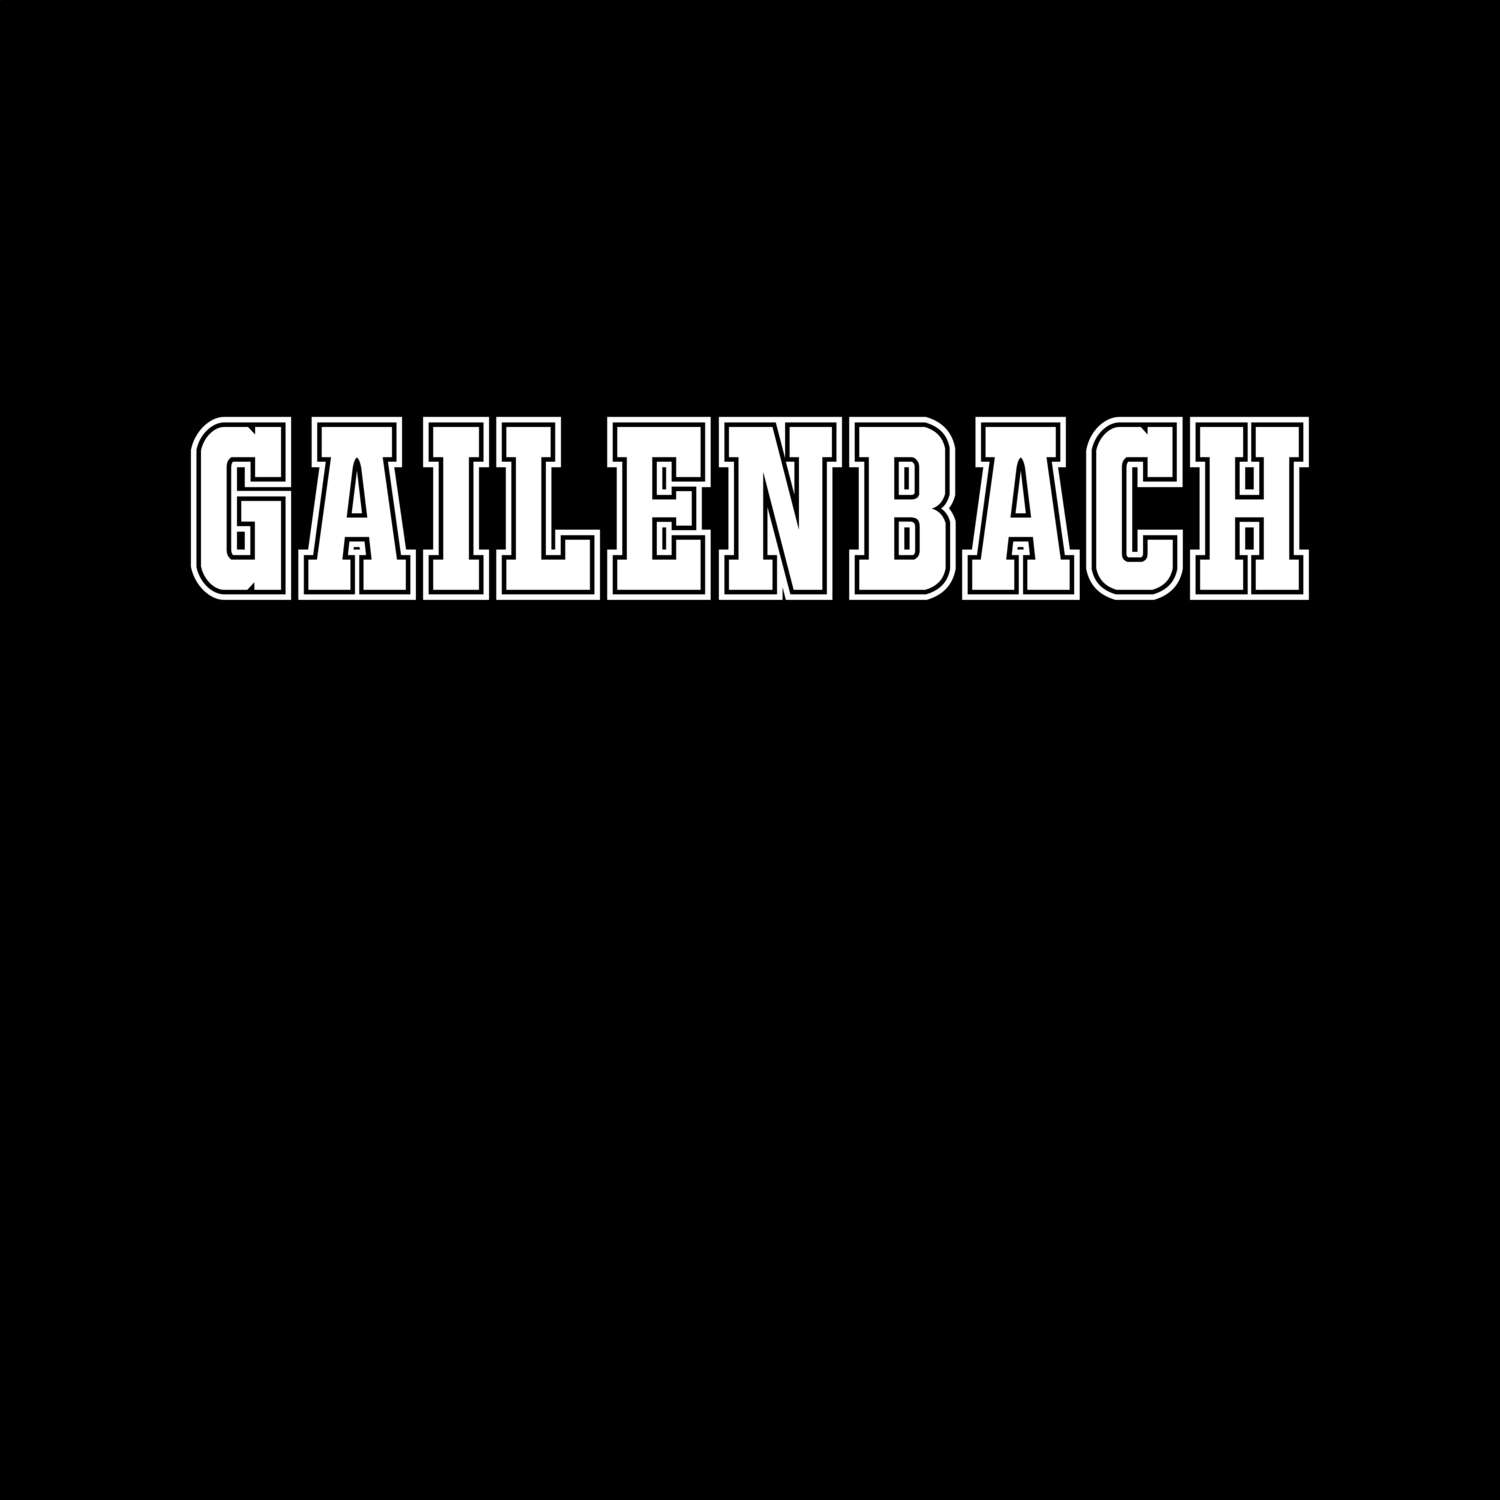 Gailenbach T-Shirt »Classic«